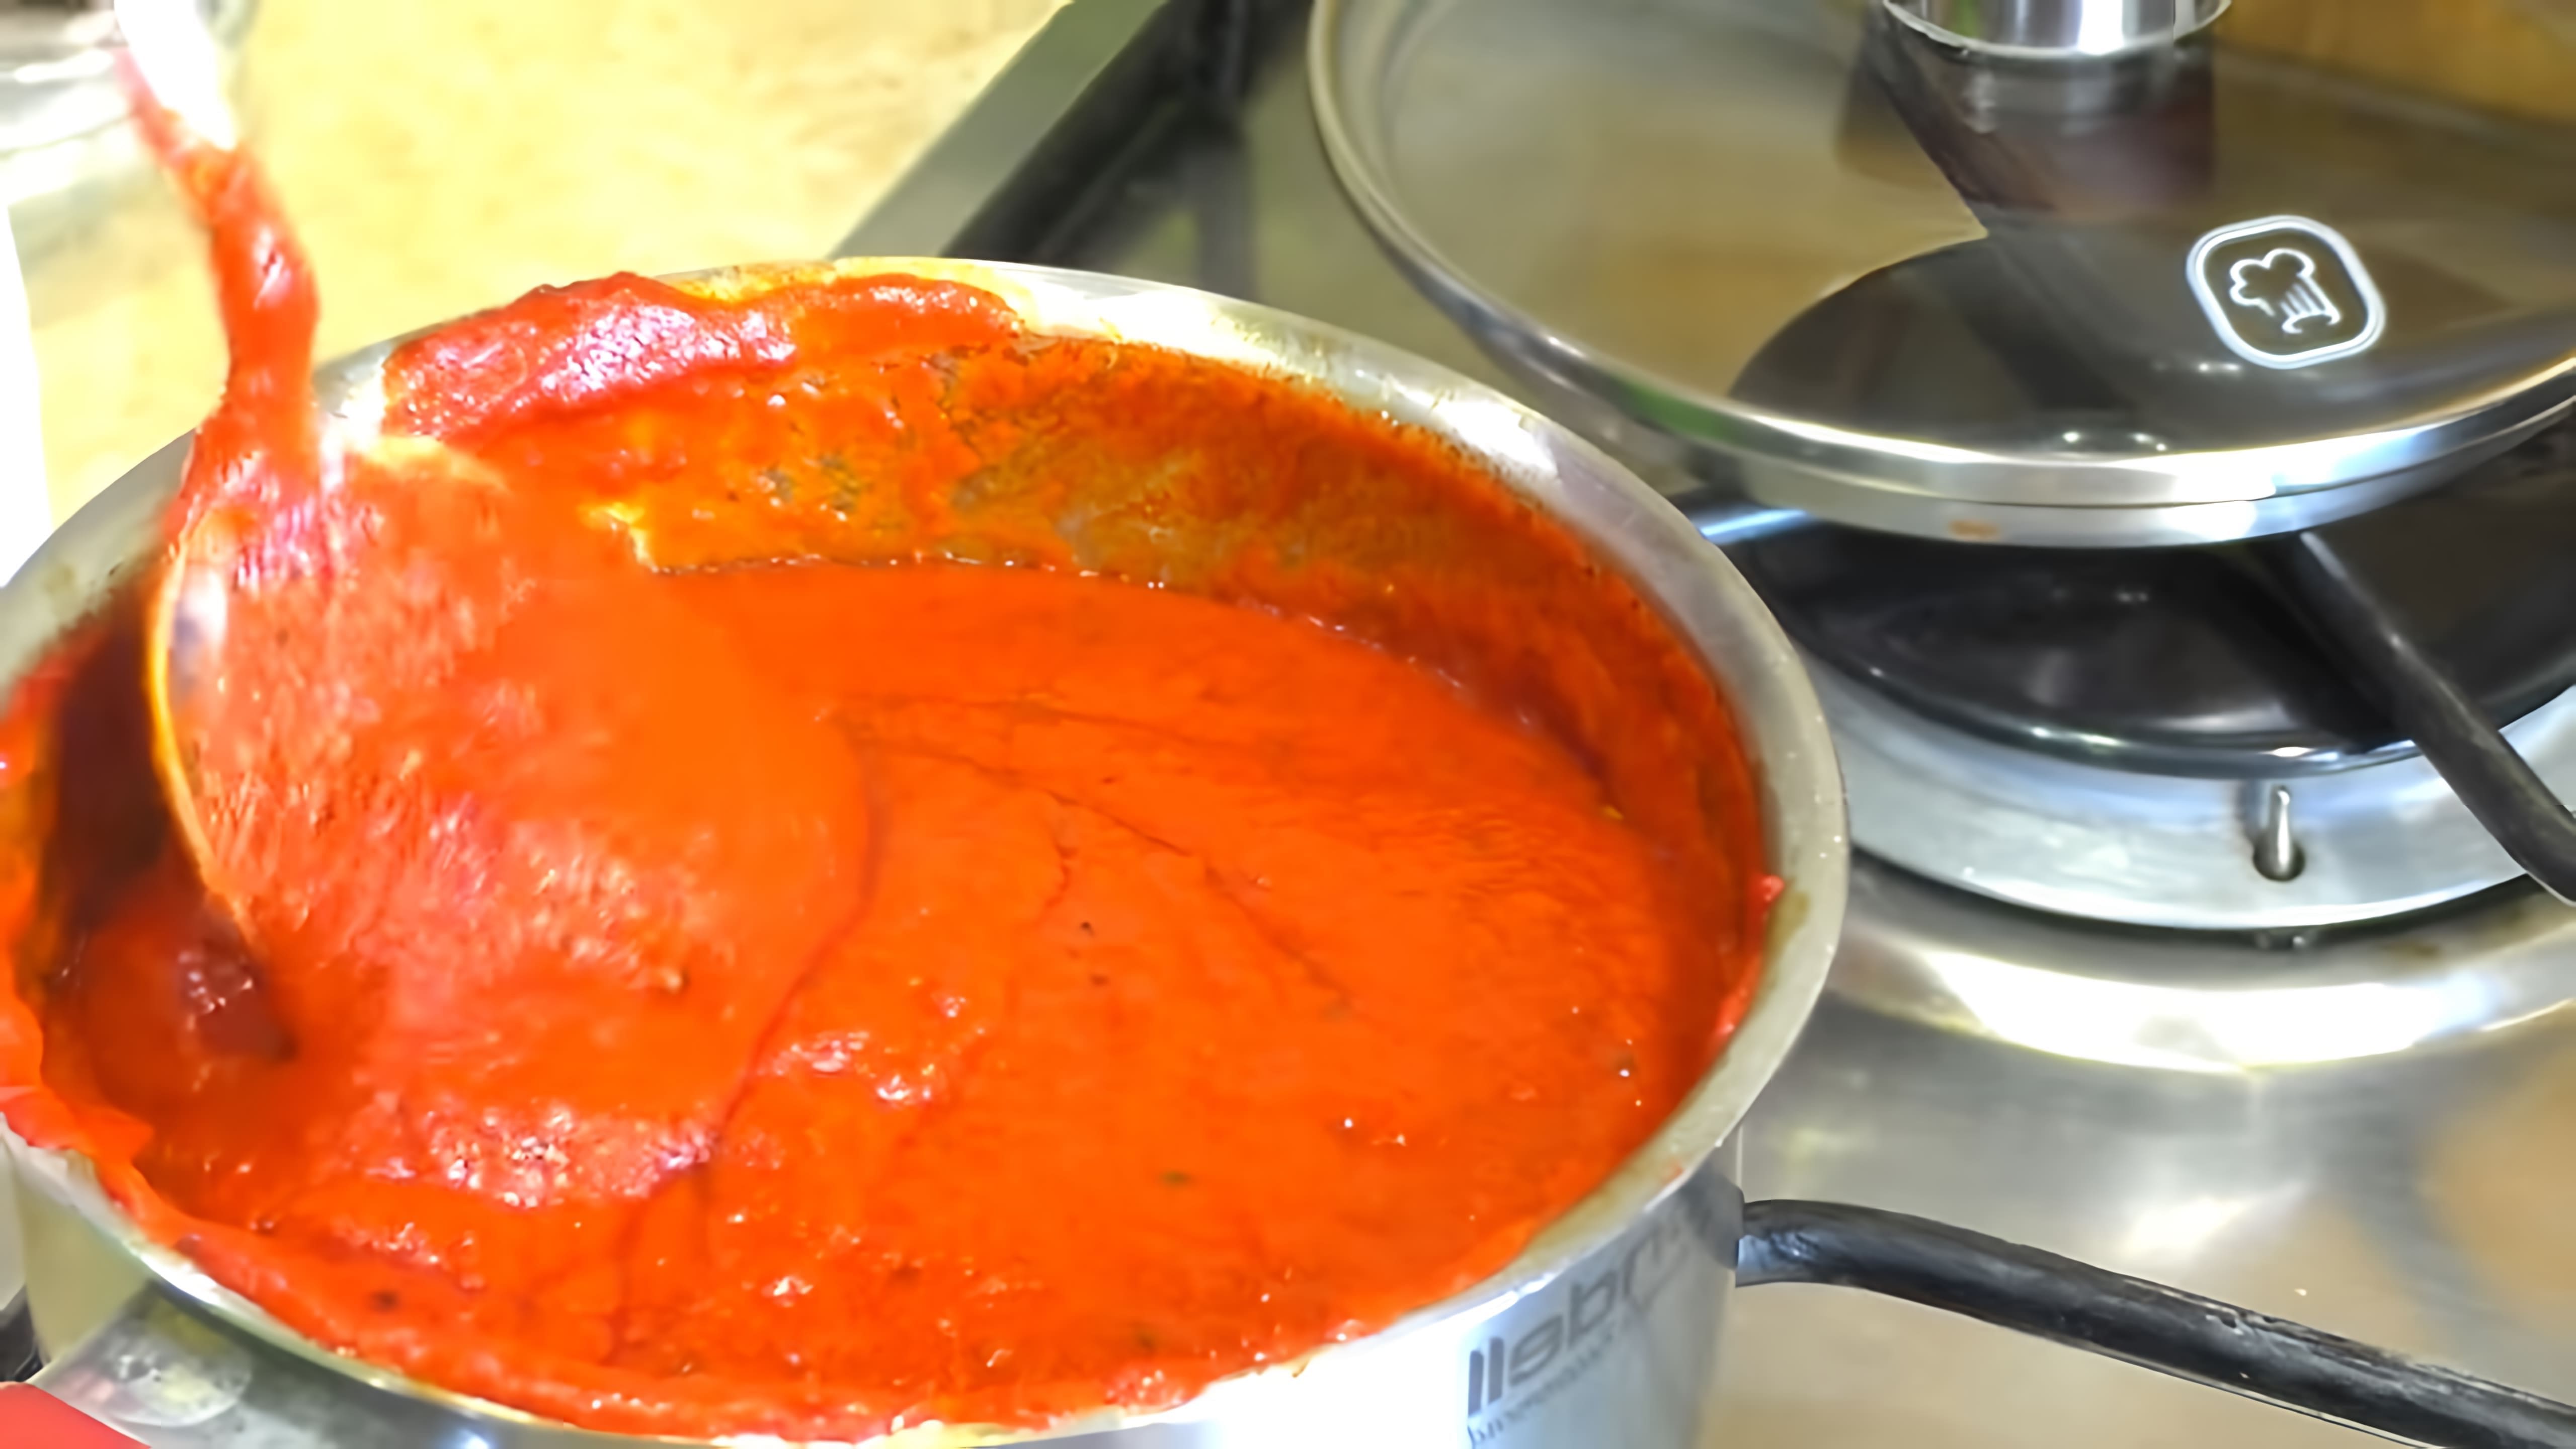 В этом видео Мария Мироновна рассказывает о том, как она заменила кетчуп на томатный соус, который готовится из томатной пасты, смеси приправ и воды